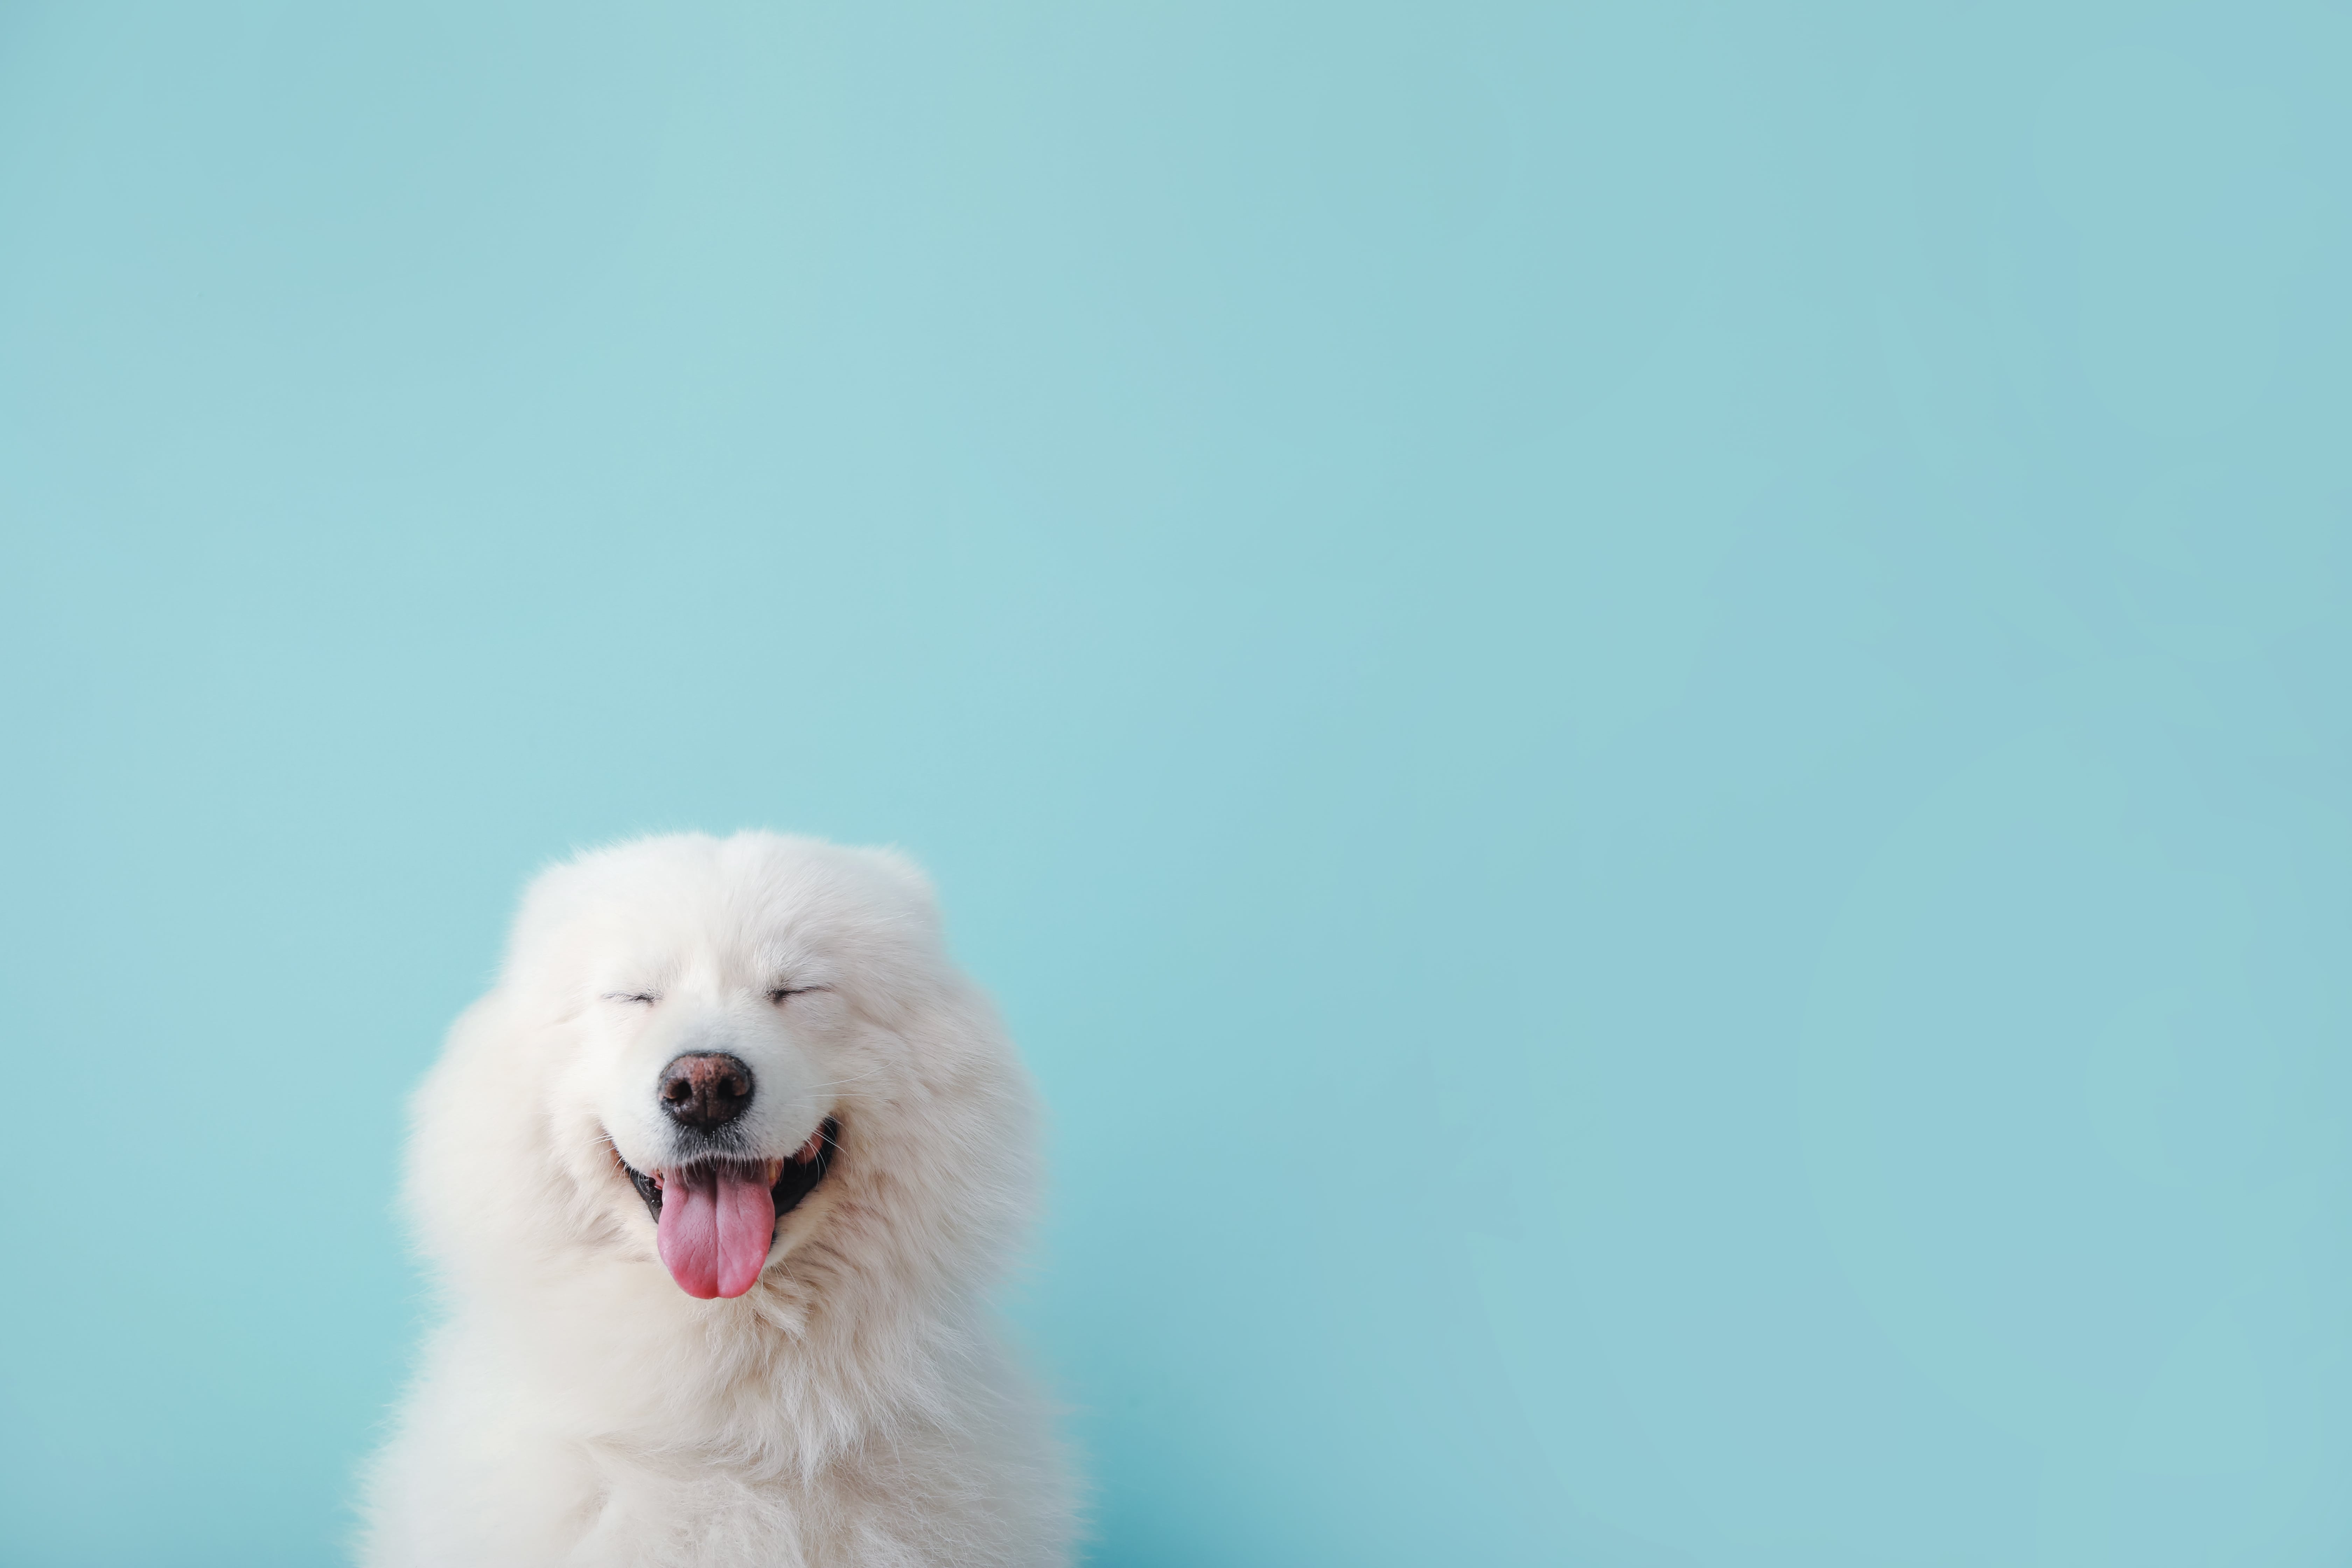 White dog on blue background